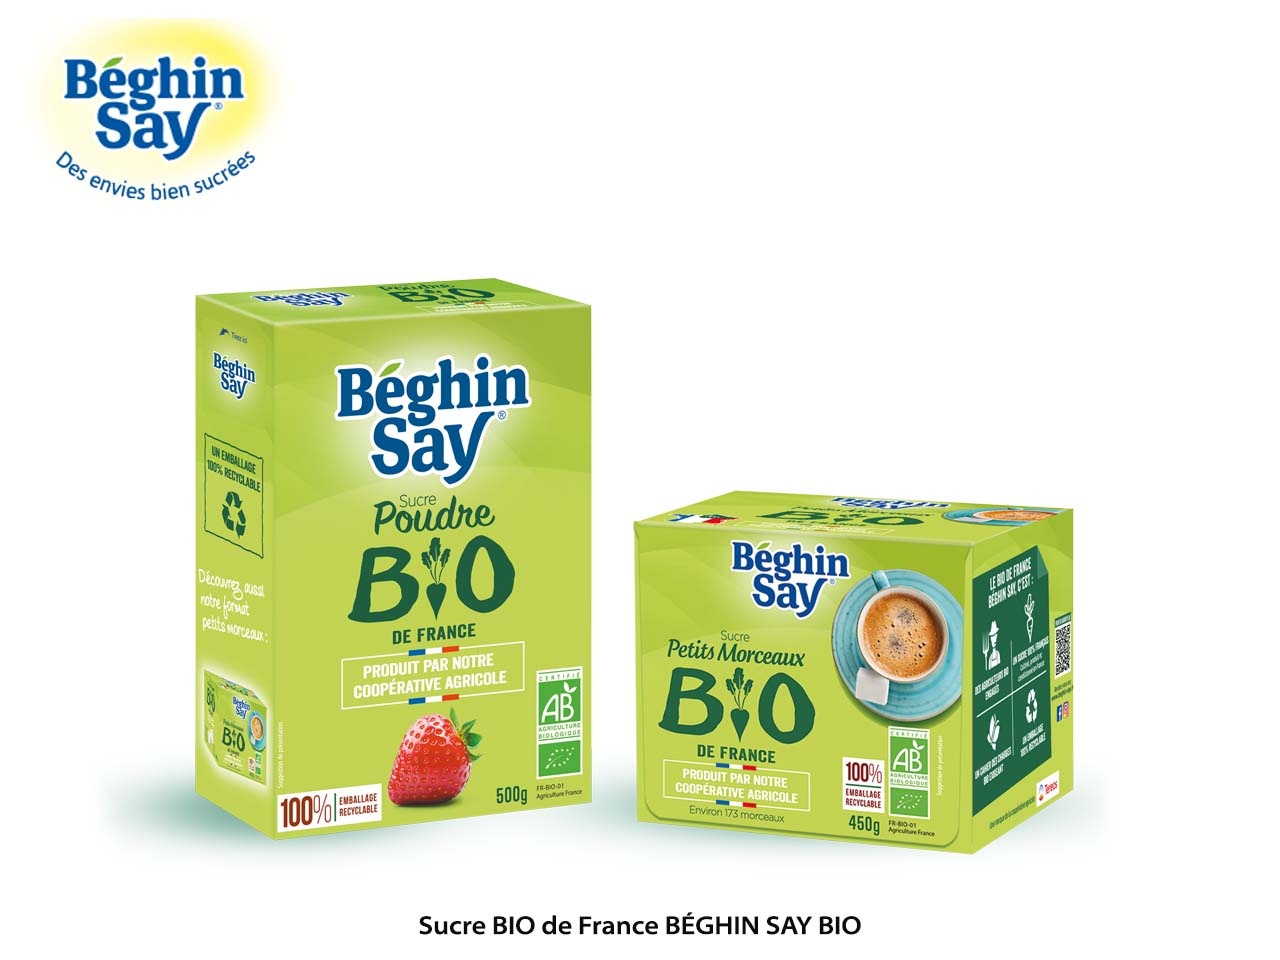 Béghin Say lance deux nouvelles gammes de sucre BIO, soucieuses de l’environnement